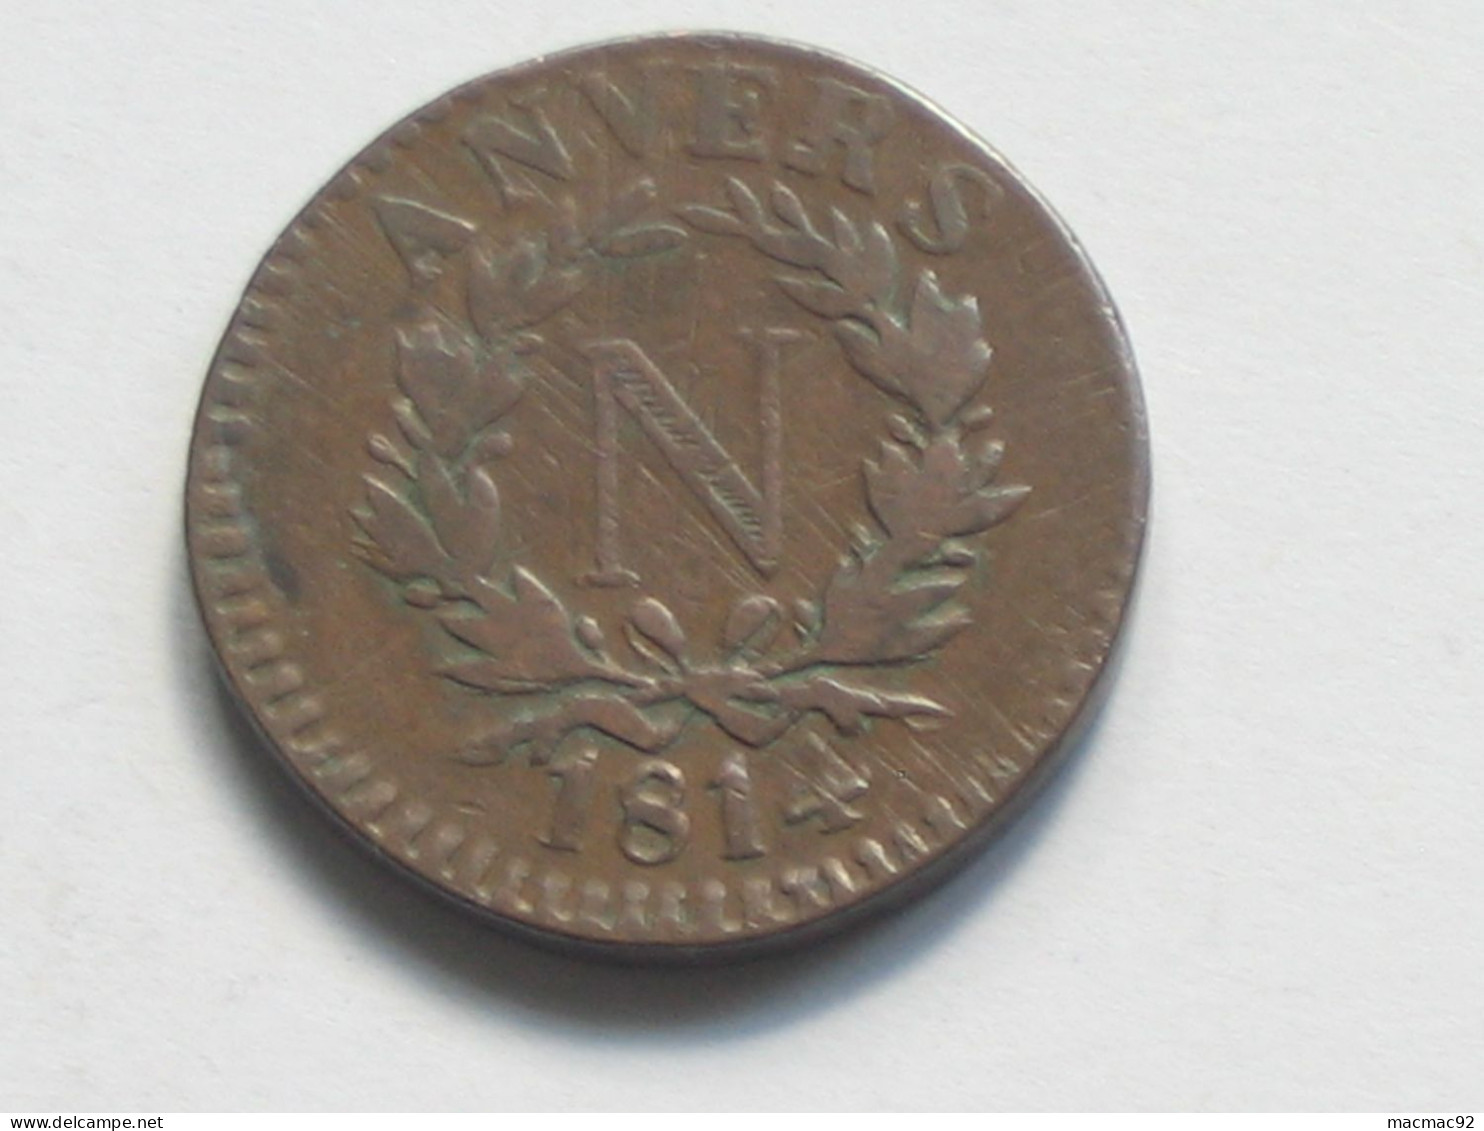 5 Centimes 1814  Siège D'ANVERS - Monnaie Obsidionale  **** EN ACHAT IMMEDIAT **** Monnaie  RARE !!!! - 1814 Siège D’Anvers